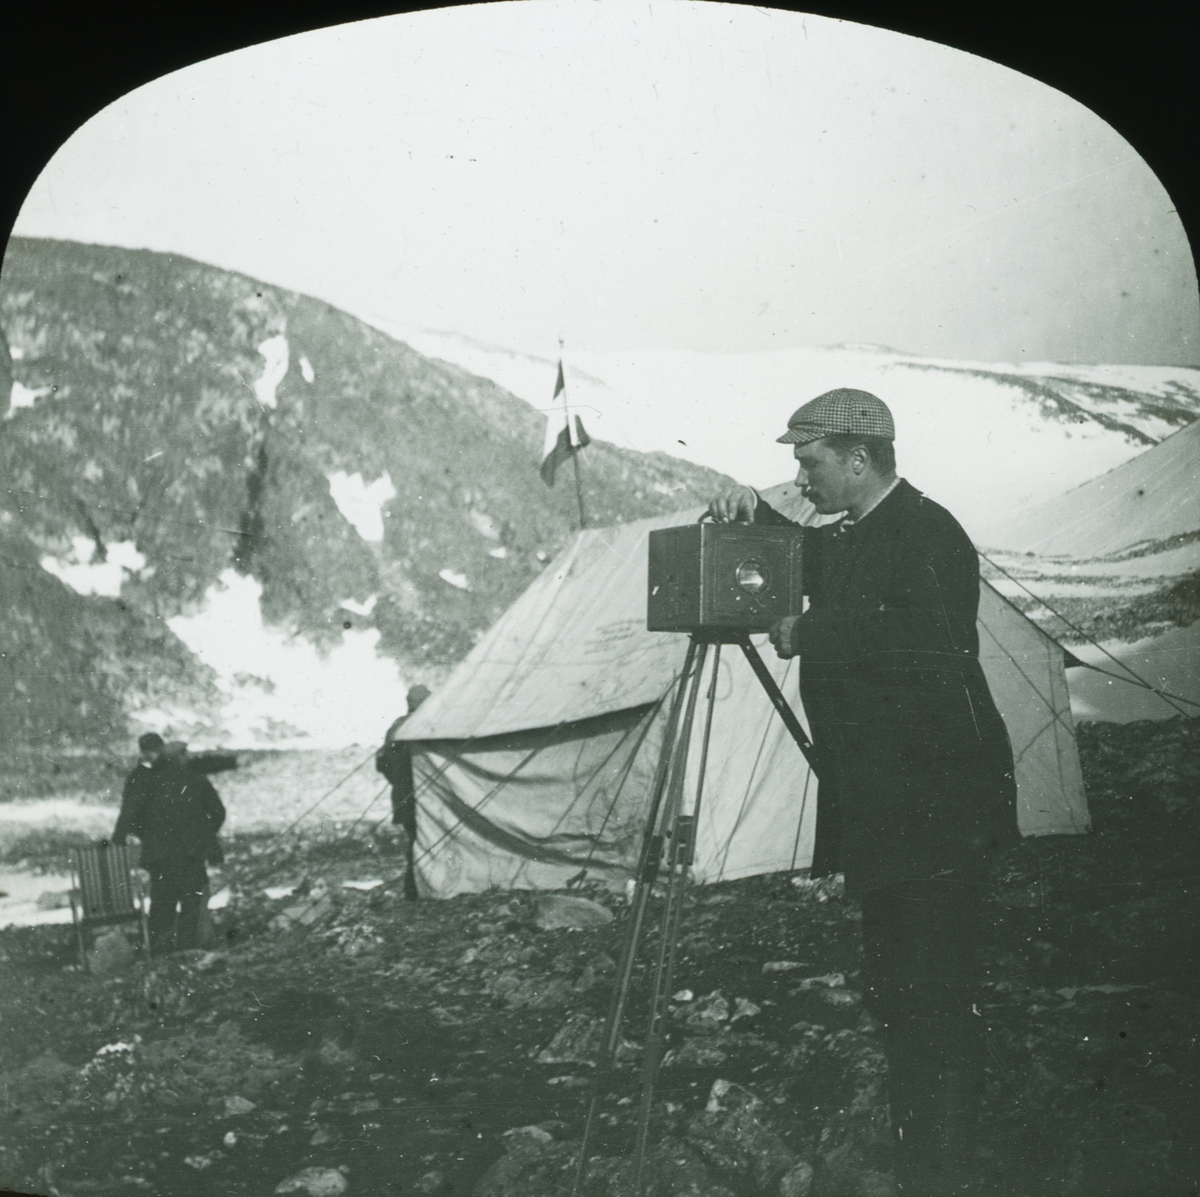 Glasnegativ med motiv av Nils Strindberg som står och ställer in sin kamera. I bakgrunden skymtas ett tält och tre män.